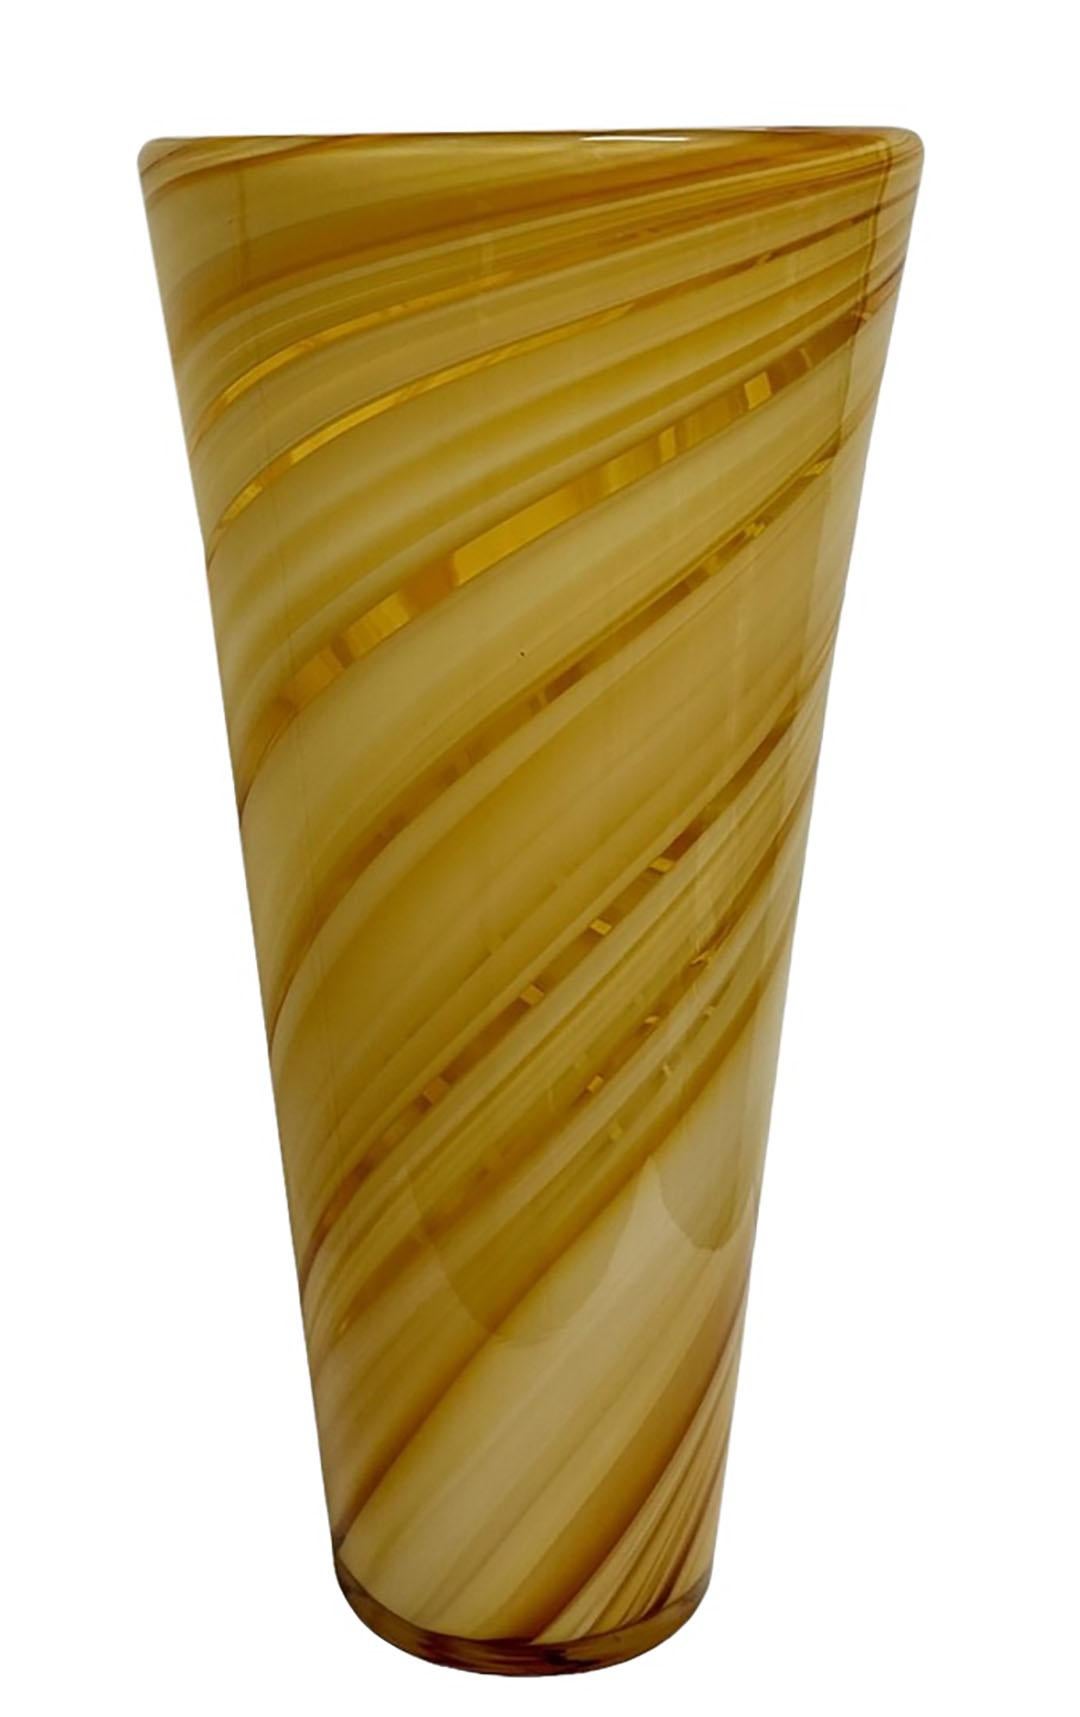 A Murano swirl glass vase in creams and tan. Circa 1970s, Italy.